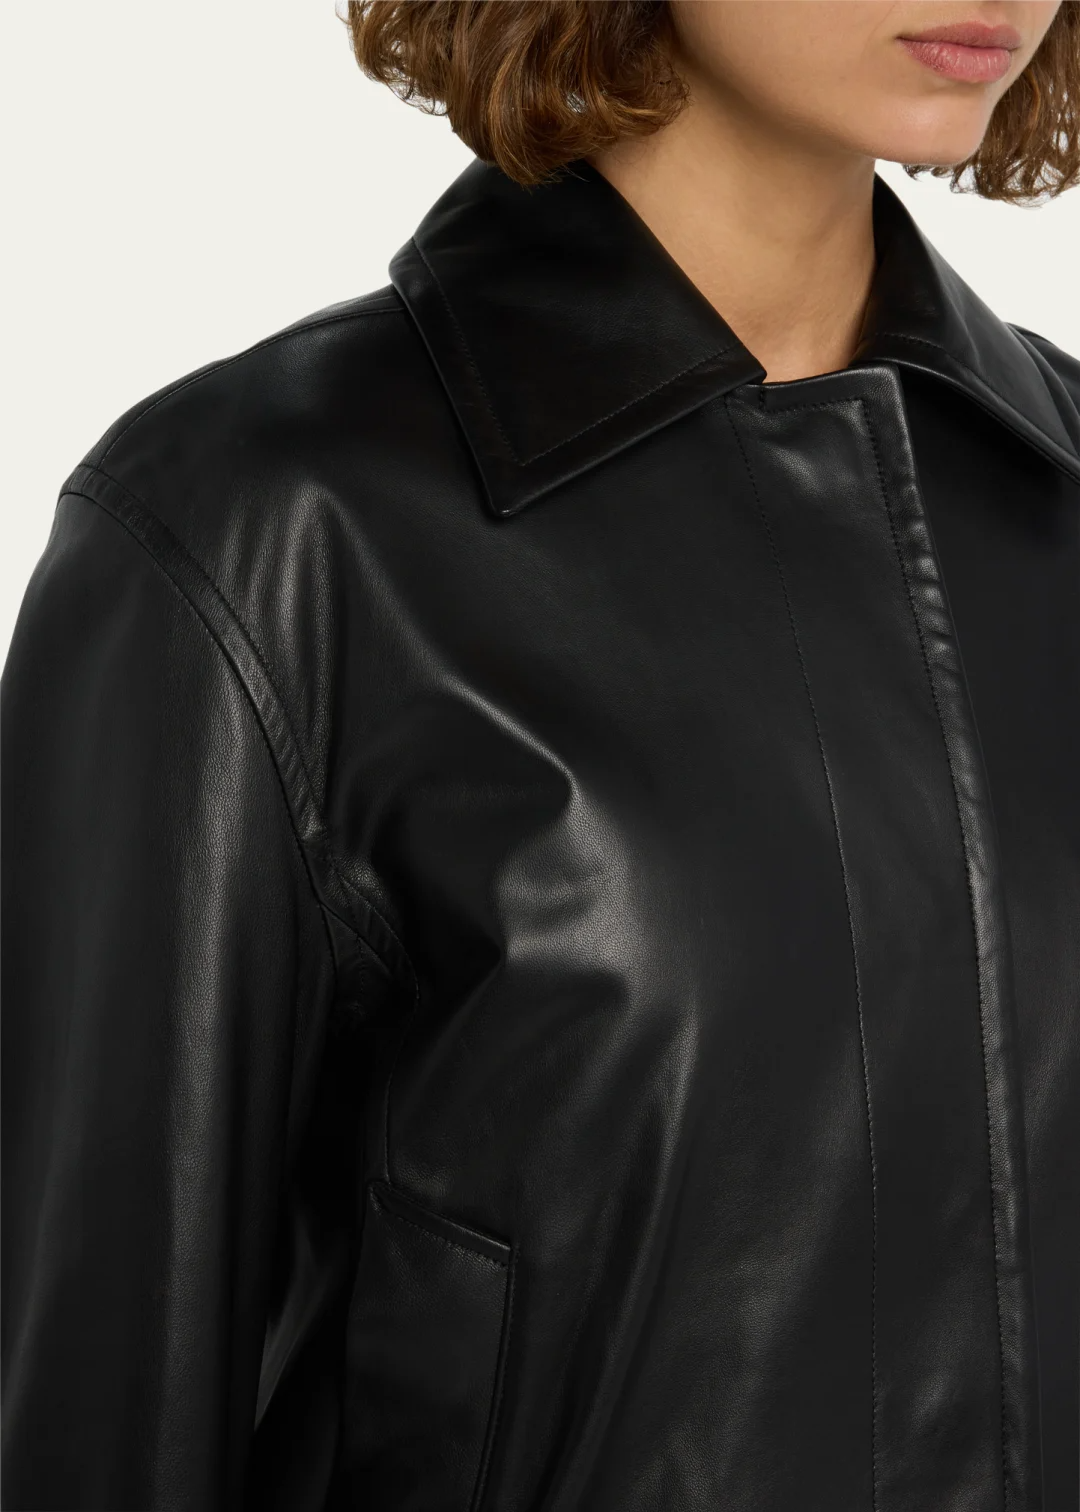 Iconic Leather Bomber Jacket